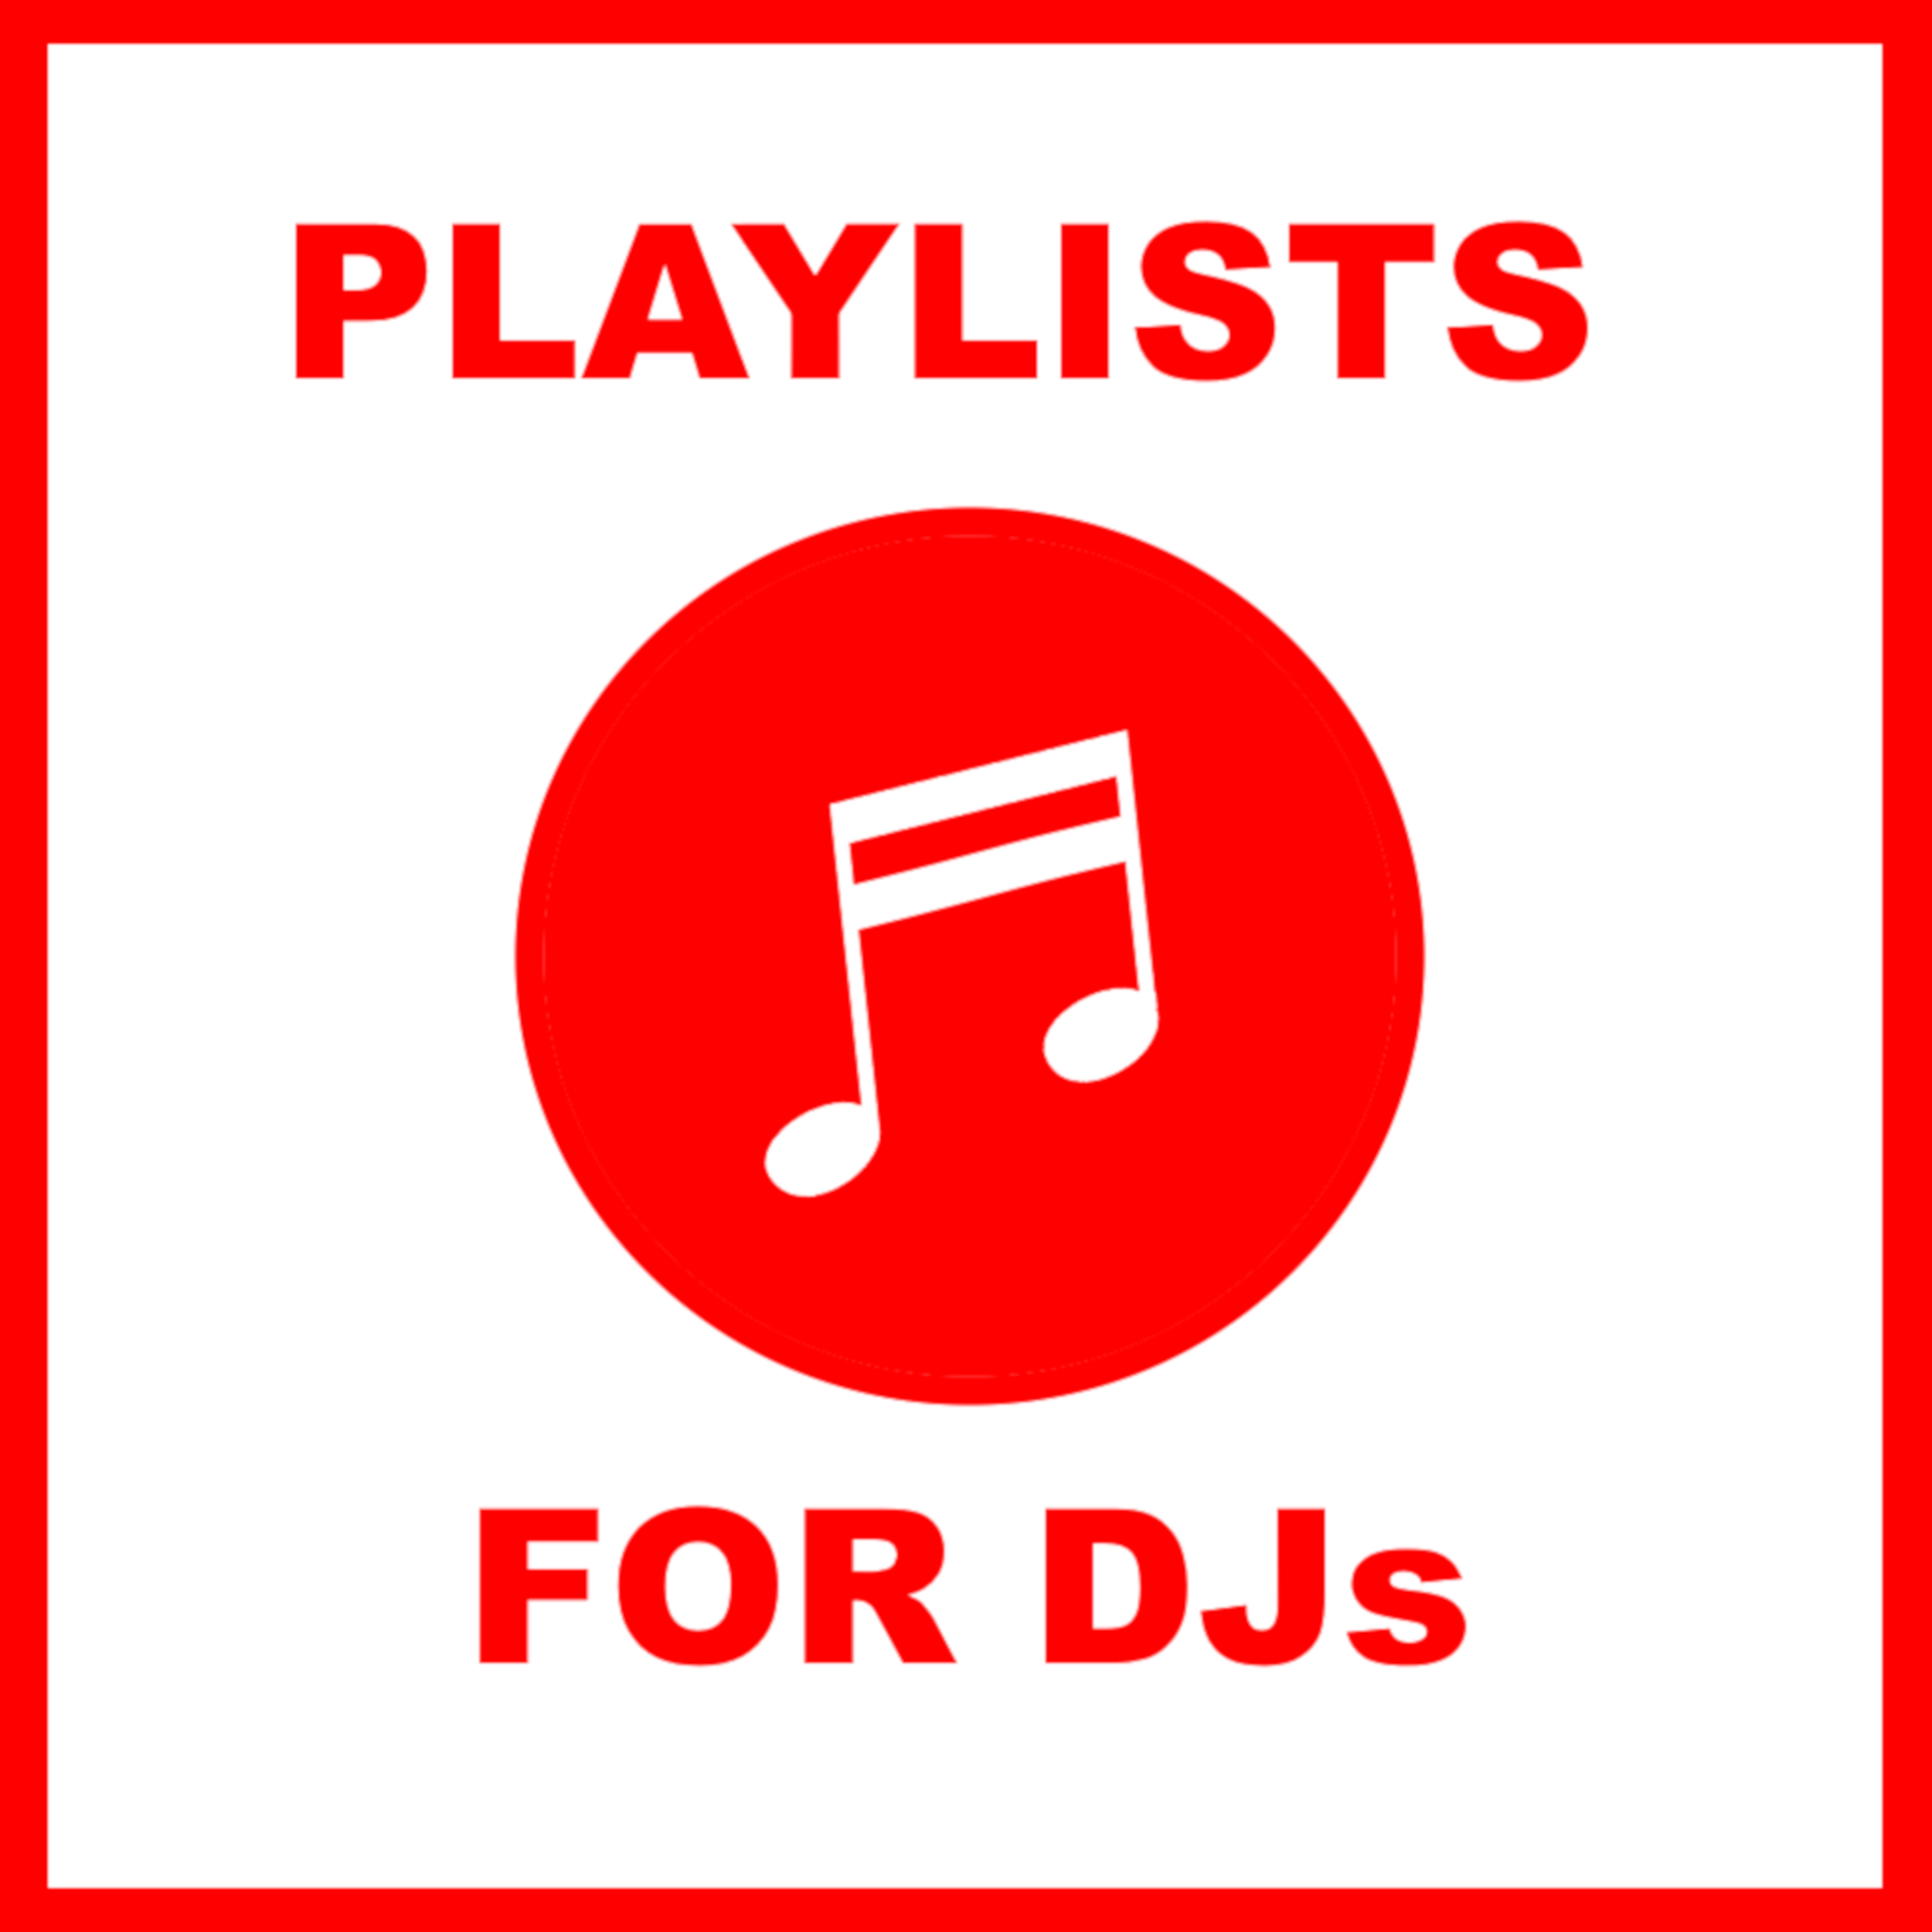 Playlists For DJs